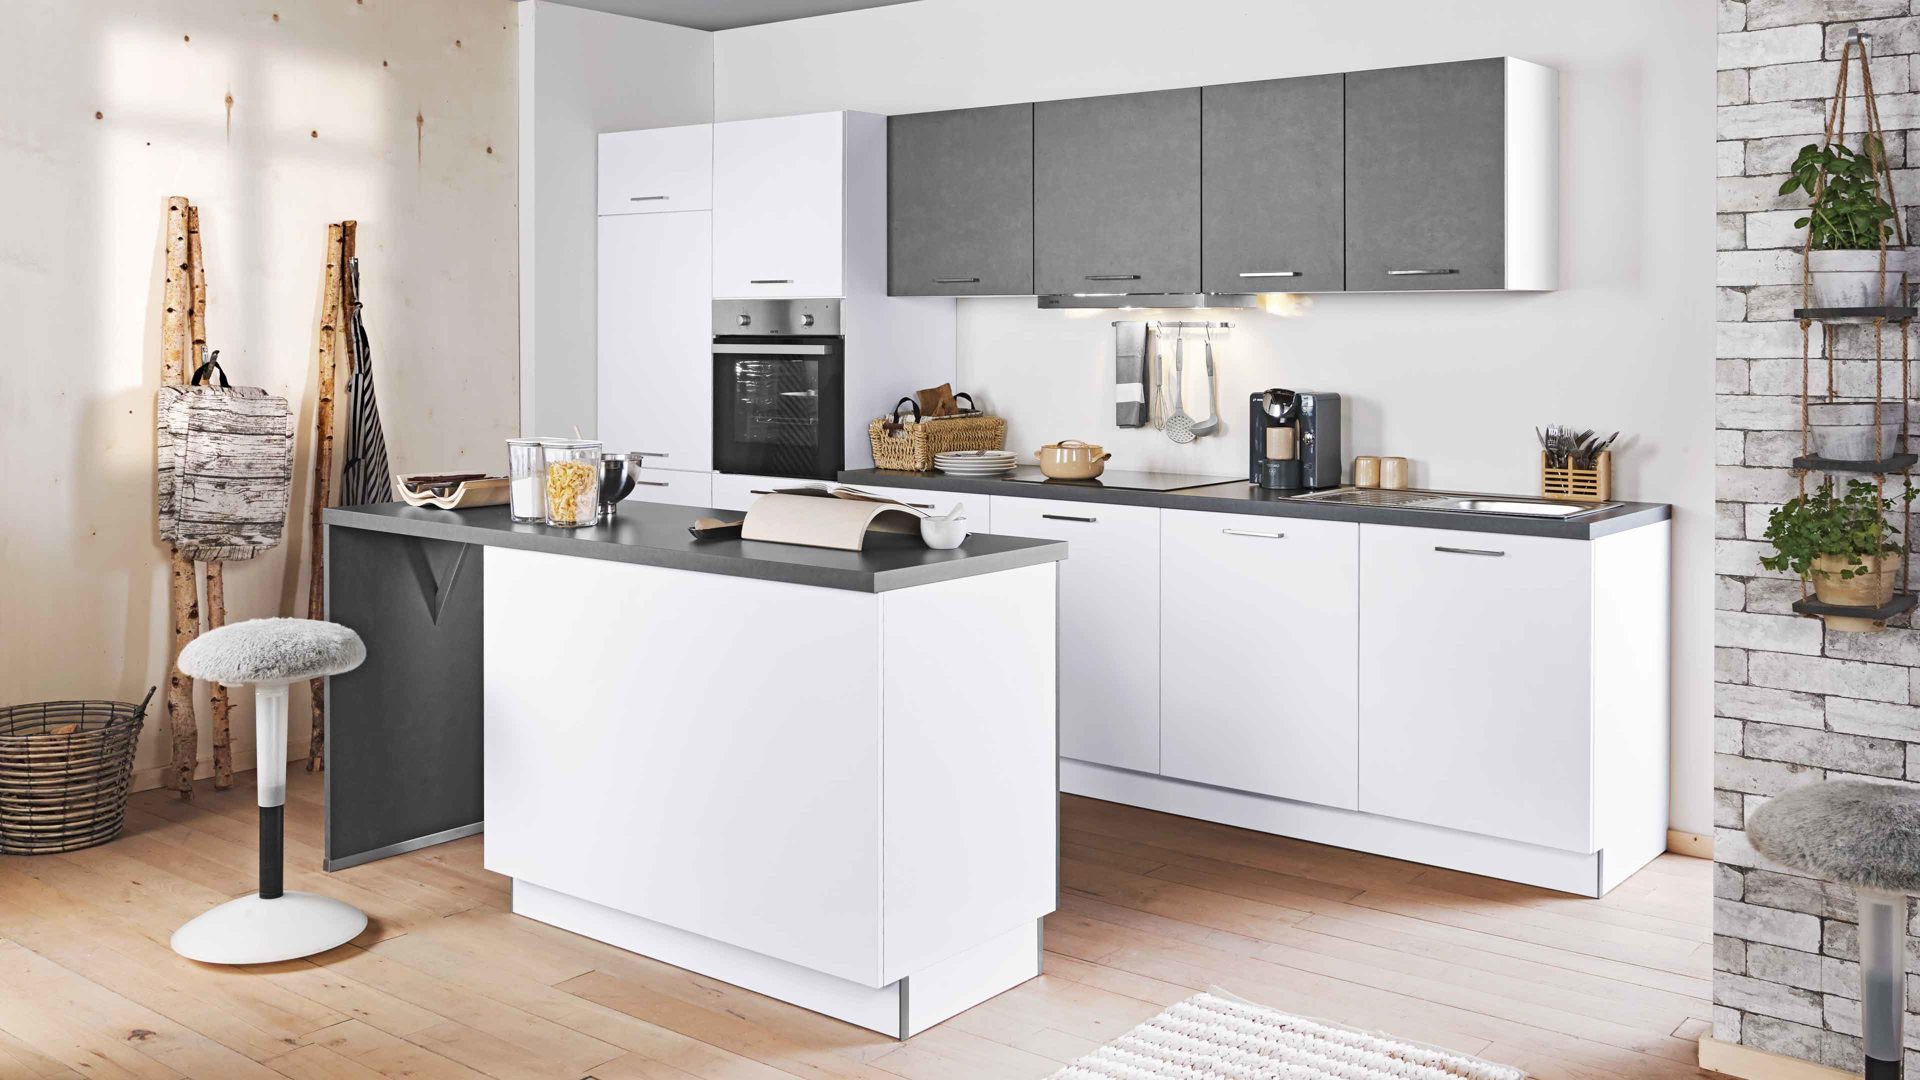 Einbauküche Express küchen® aus Holz in Weiß EXPRESS KÜCHEN® Einbauküche Moon mit IGNIS Geräten Weiß & dunkler Stahl - zweizeilig